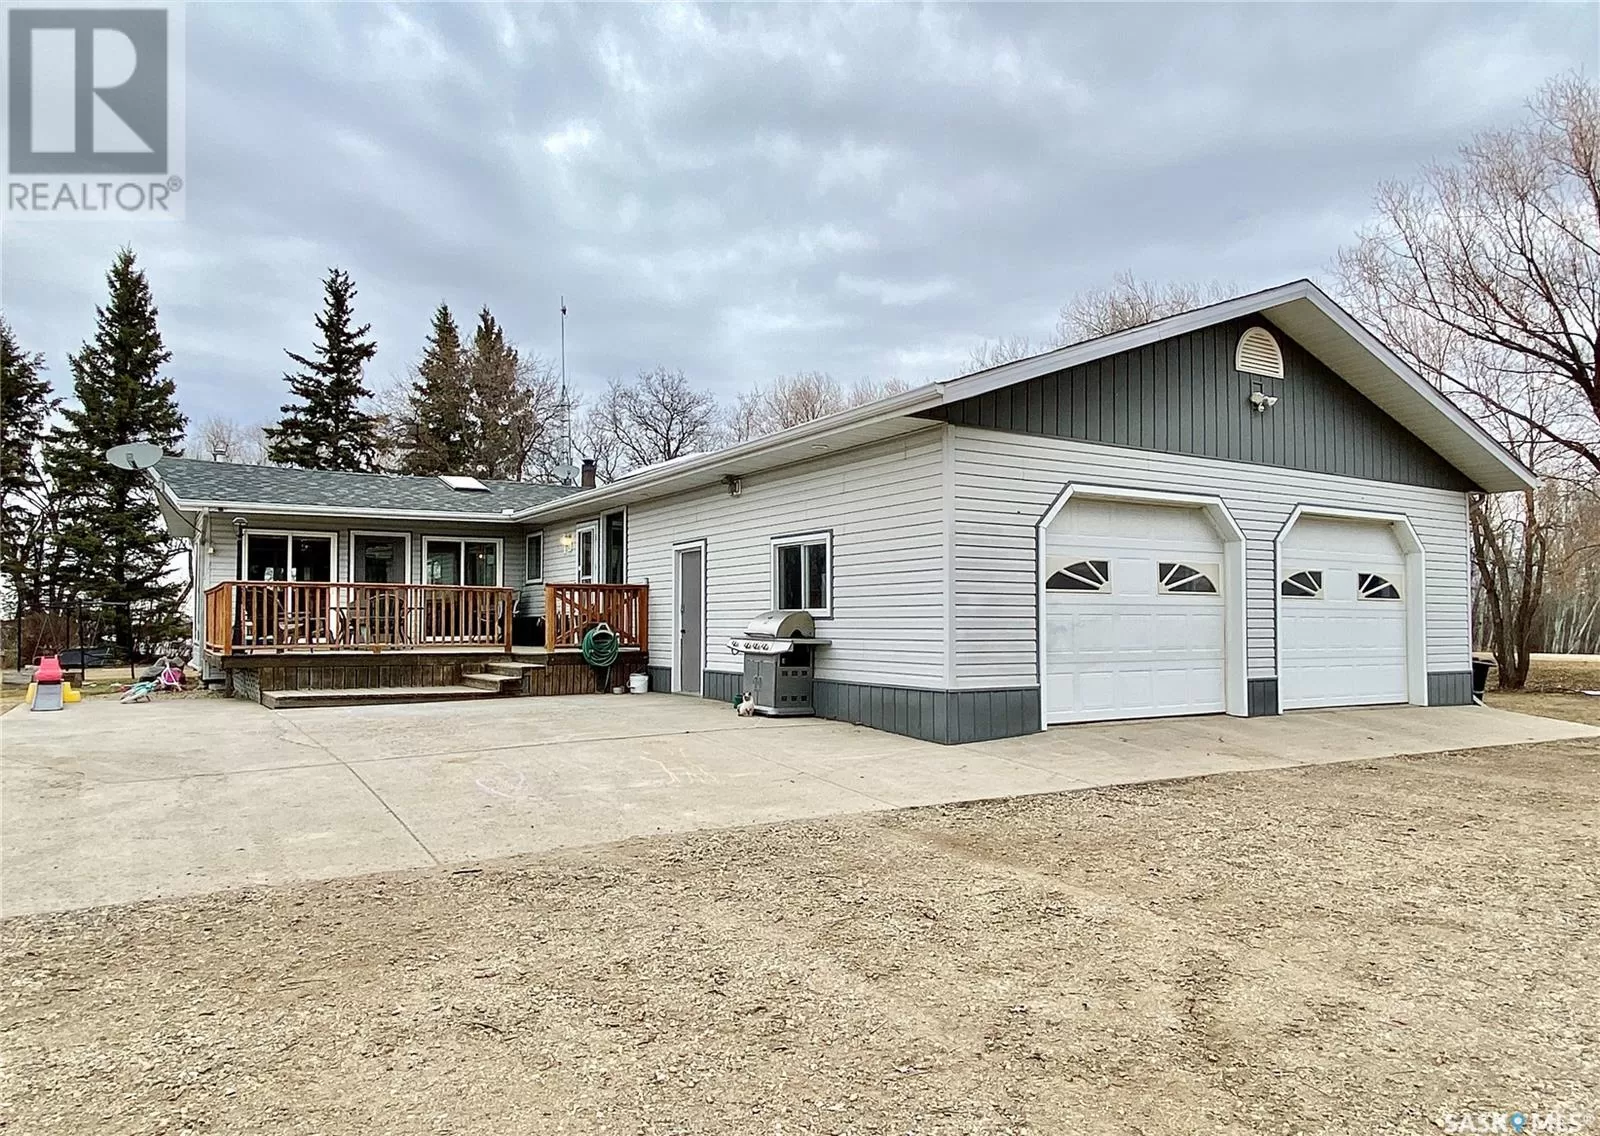 House for rent: Rb Acreage, Cote Rm No. 271, Saskatchewan S0A 1S0